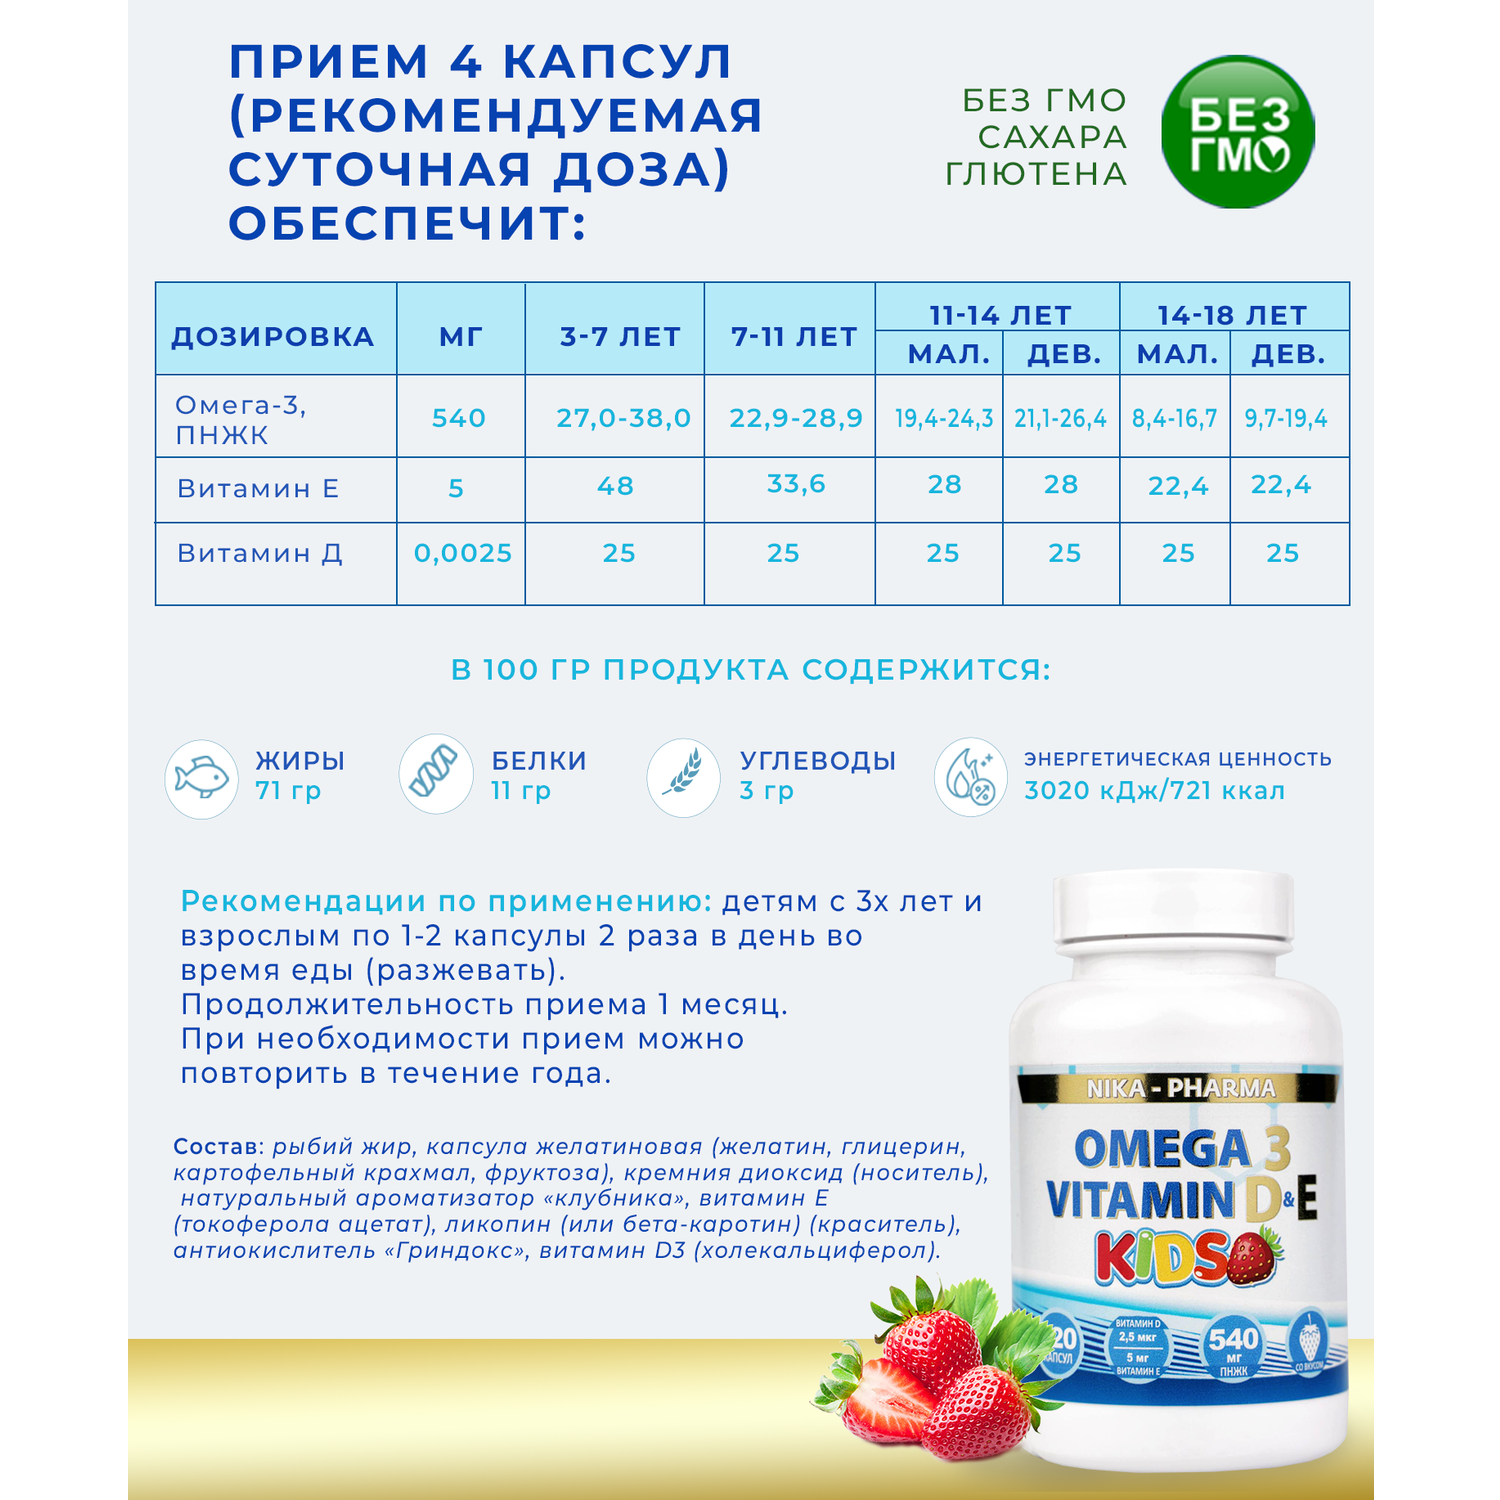 Комплекс детский Омега-3 NIKA-PHARMA с витаминами Е и Д - фото 5